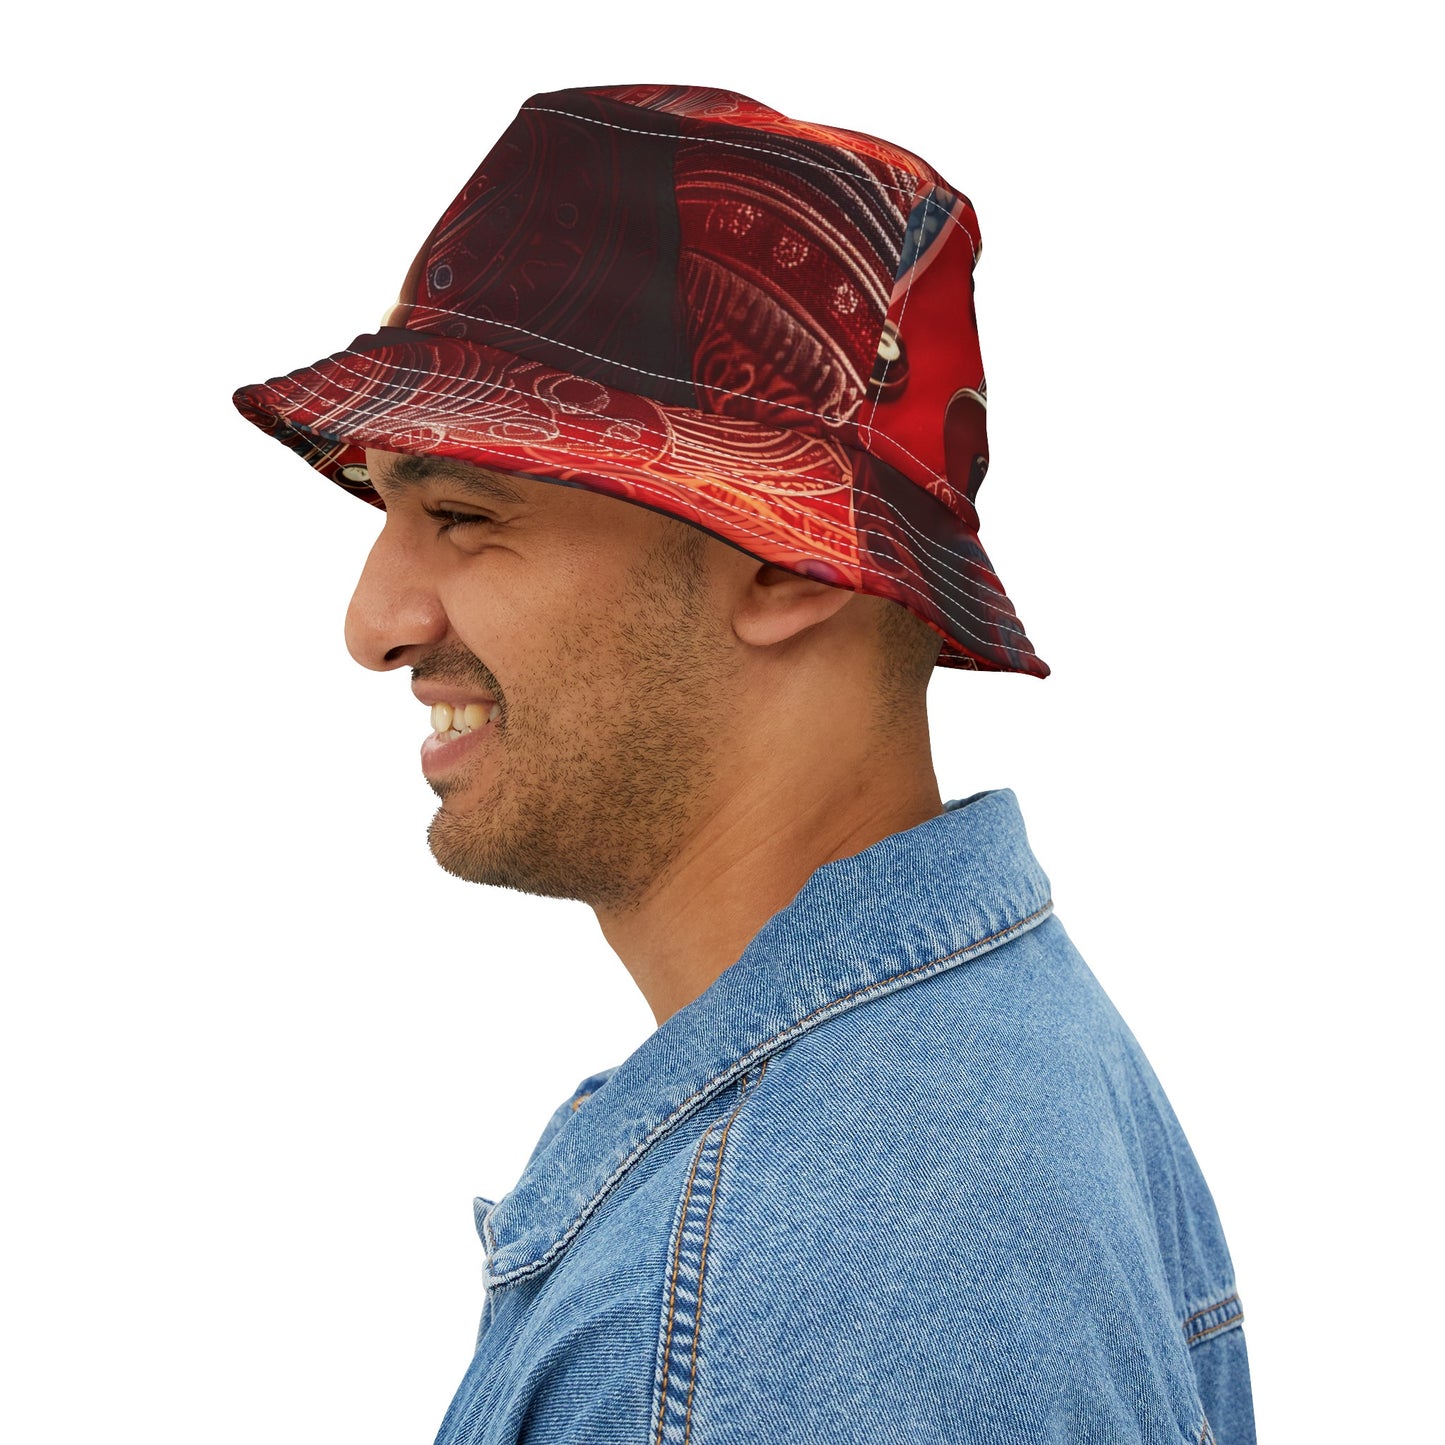 Gangstafied Red Bucket hat